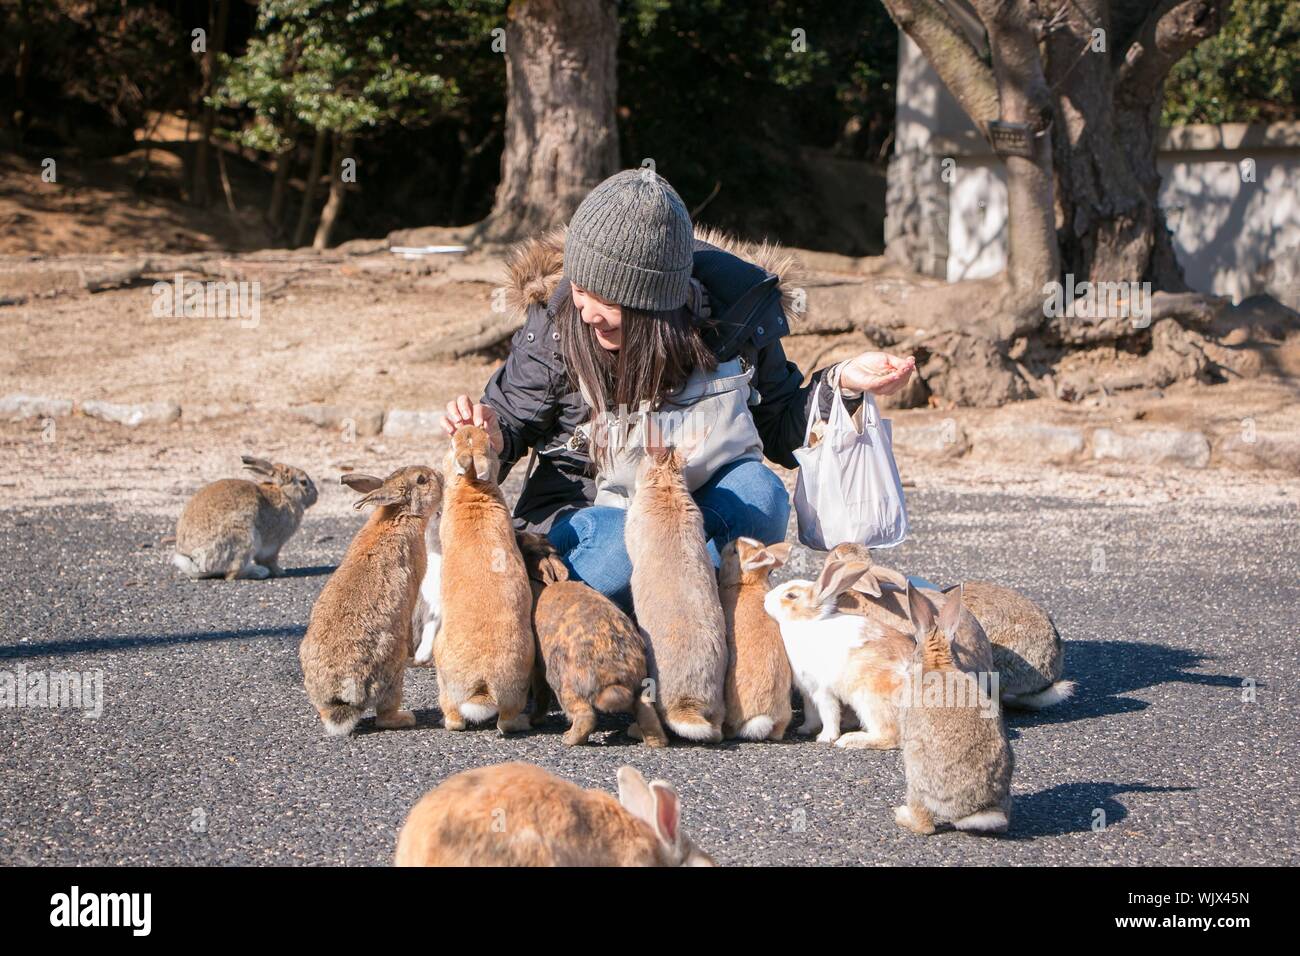 Кролики живут на улице. Остров Окуносима Япония. Остров кроликов Окуносима. Остров кроликов в Японии. Остров Зайцев в Японии.